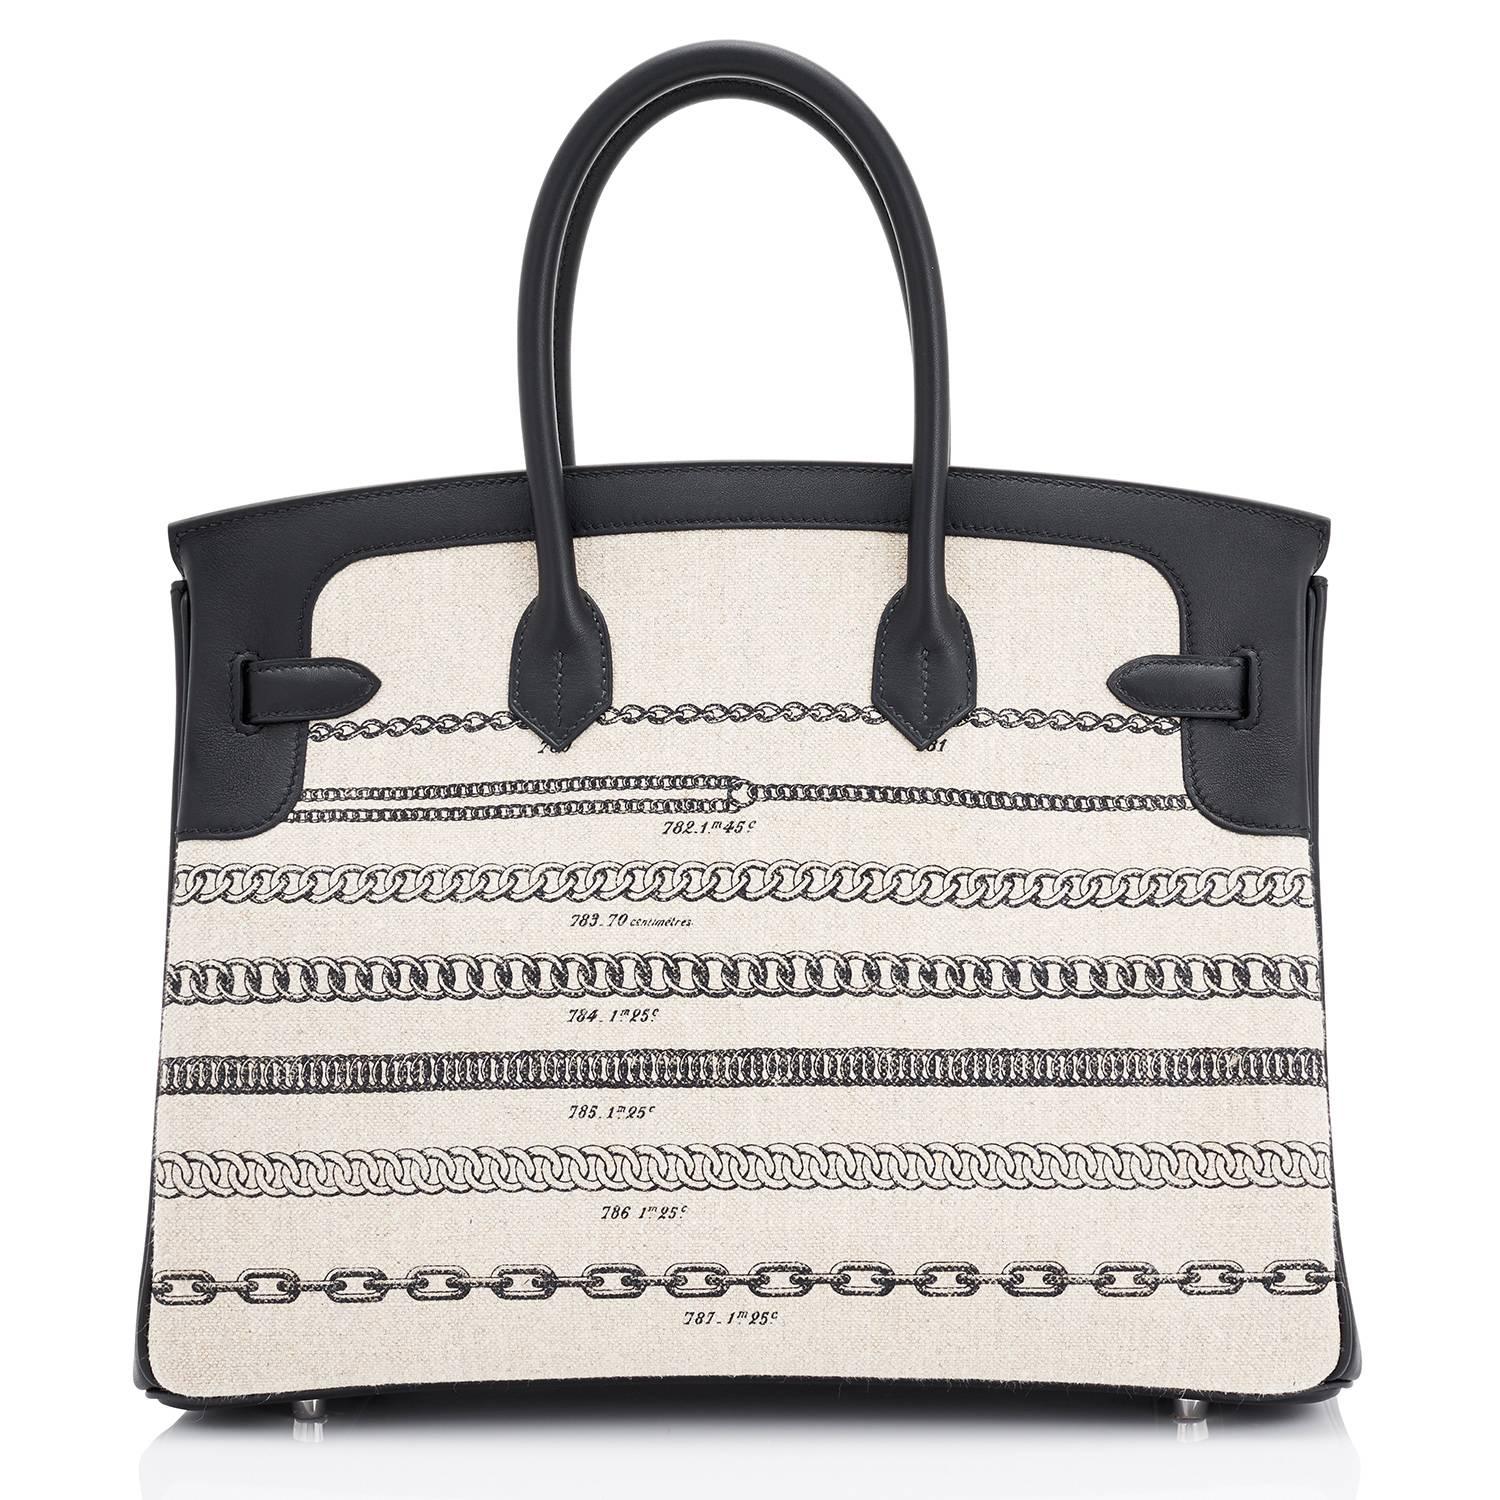 Hermes VIP 35 De Camp Dechainee Toile Swift Chevre Limited Edition Birkin Bag für Damen oder Herren